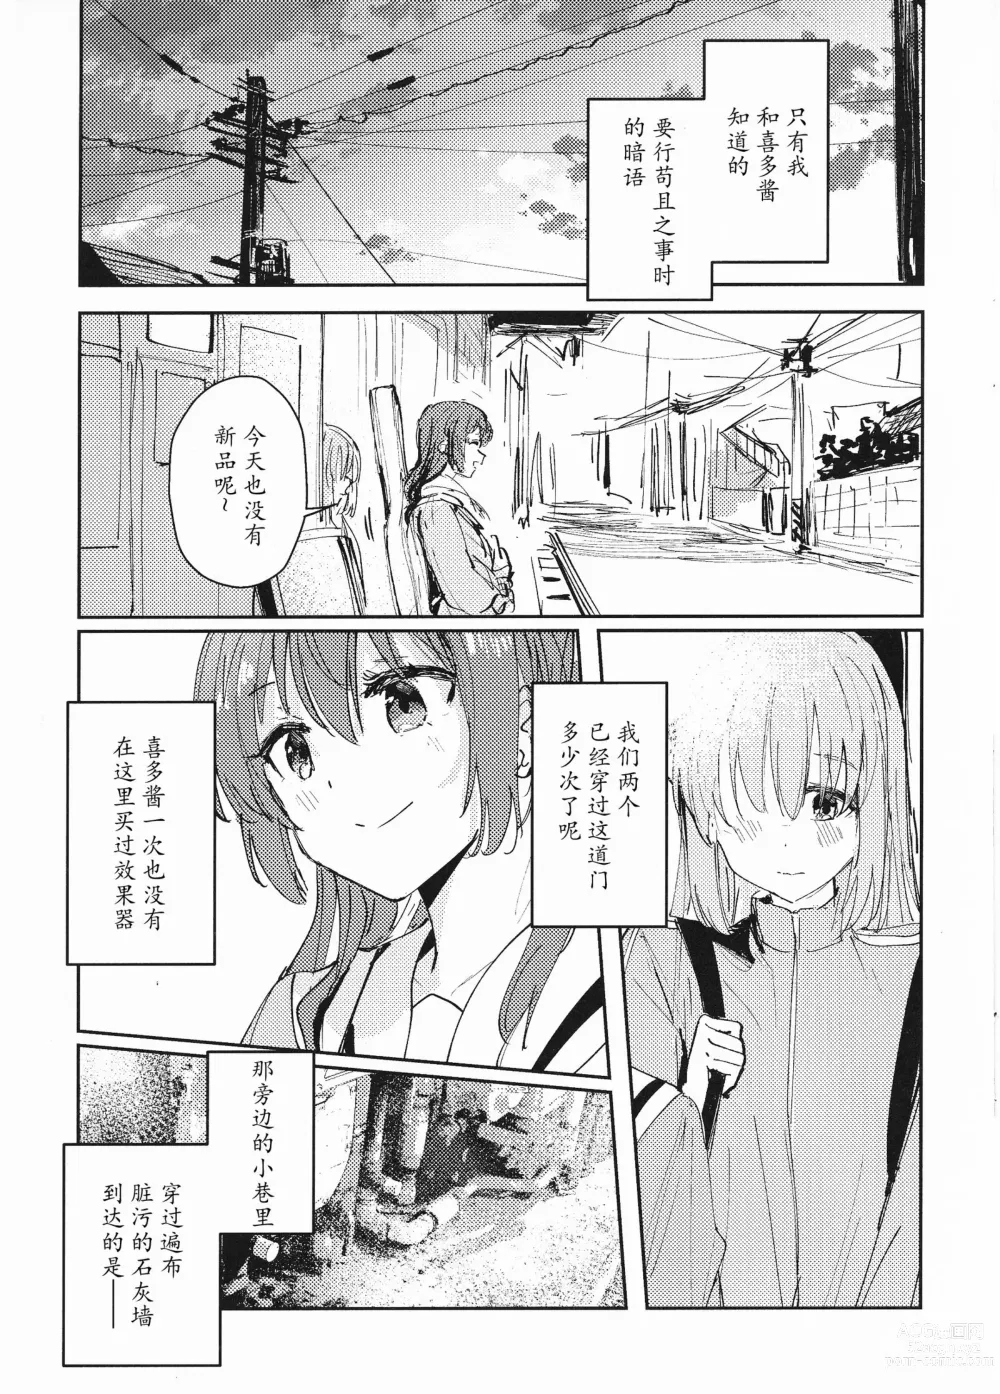 Page 4 of doujinshi Everlong